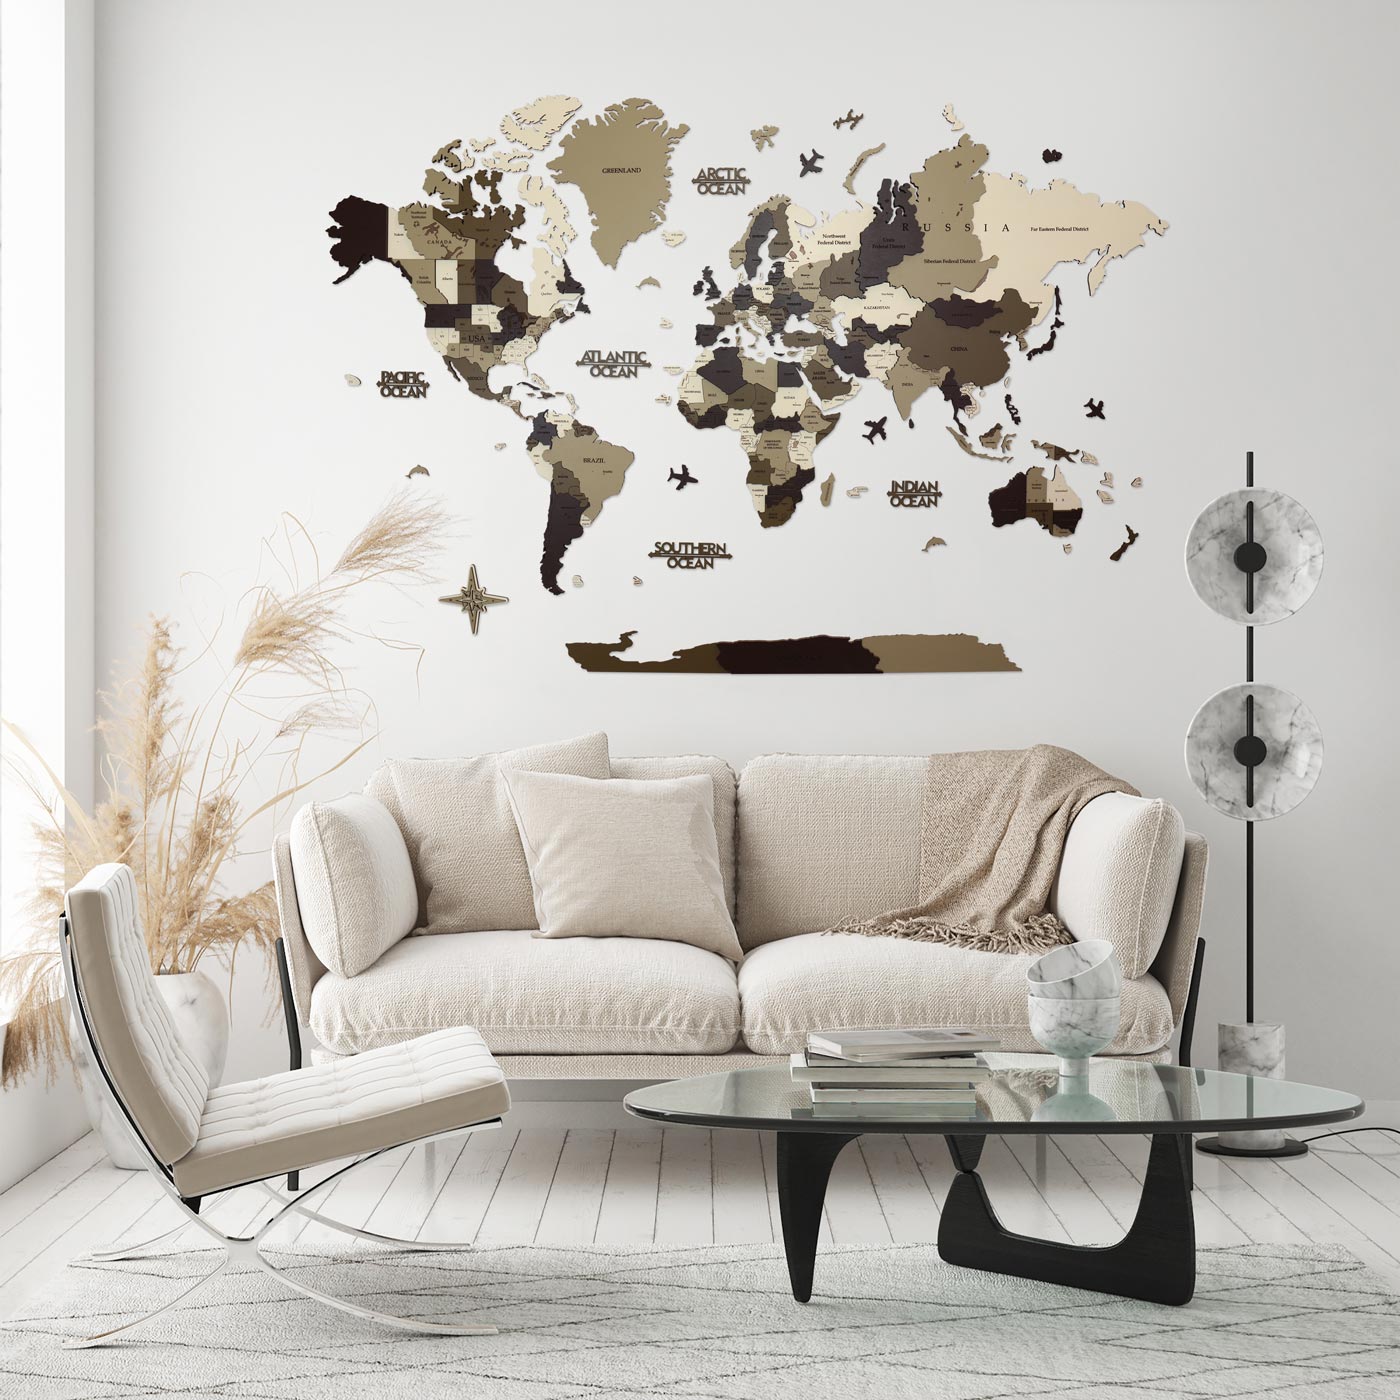 Τρισδιάστατος ξύλινος παγκόσμιος χάρτης. Ξύλινη διακόσμηση τοίχου. Χρώματα του χάρτη Καμουφλάζ από την Ksilart